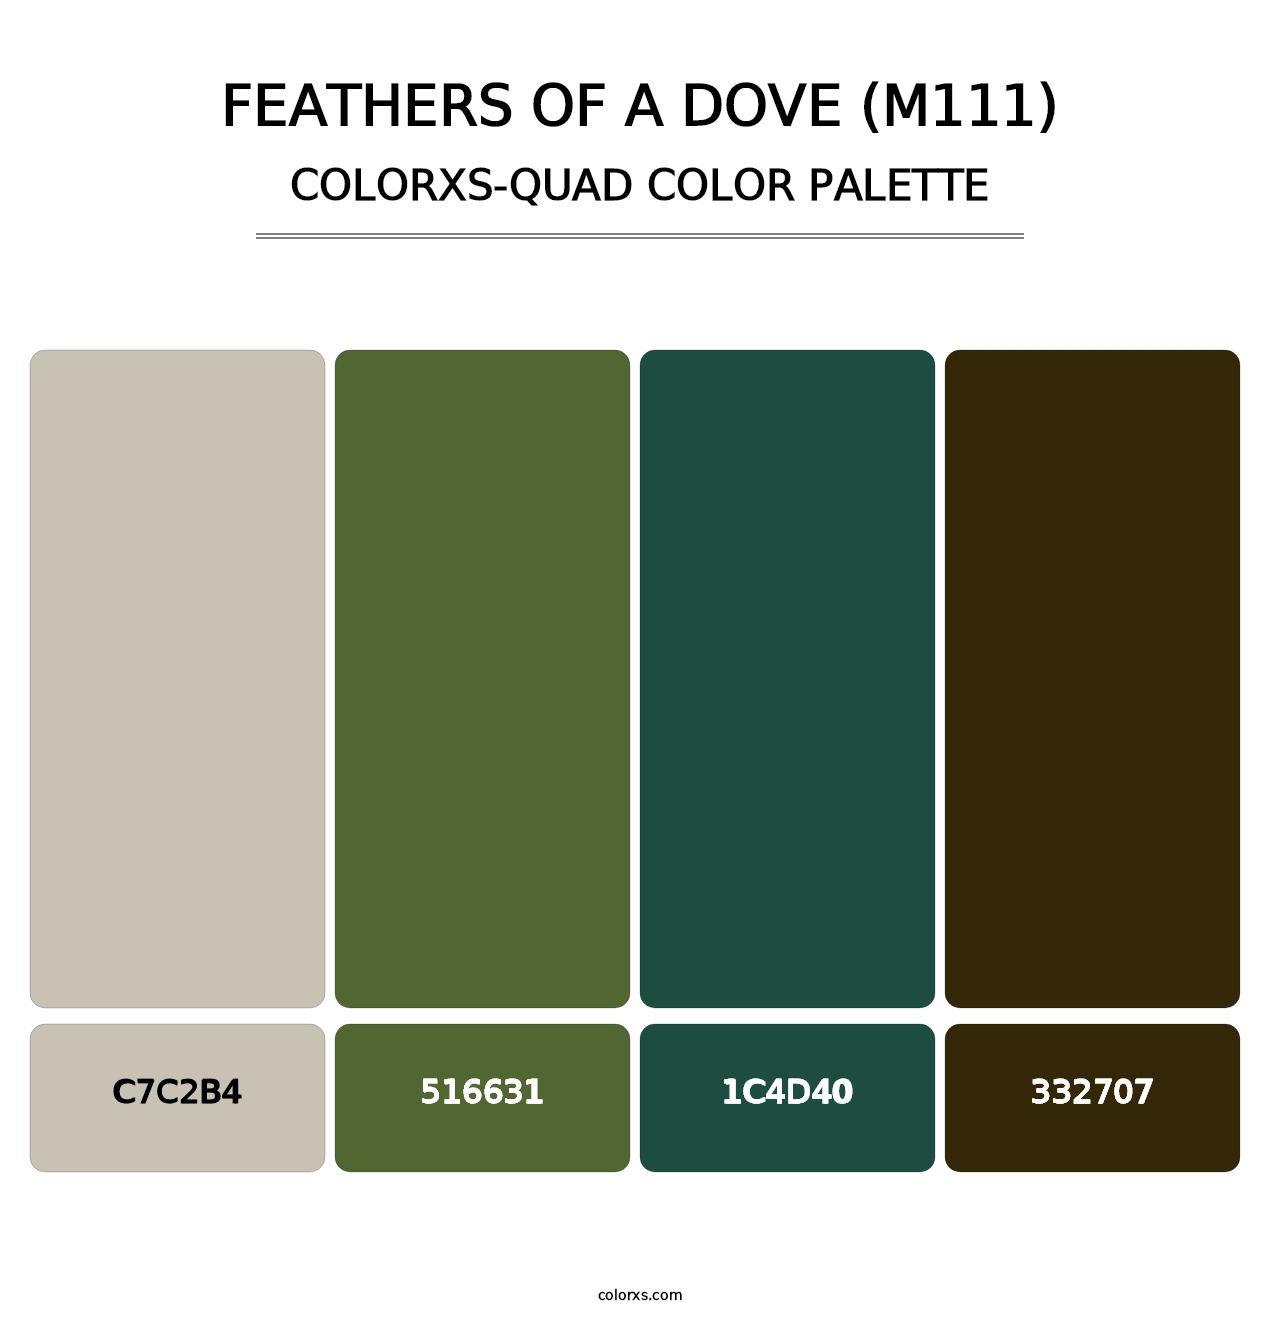 Feathers of a Dove (M111) - Colorxs Quad Palette